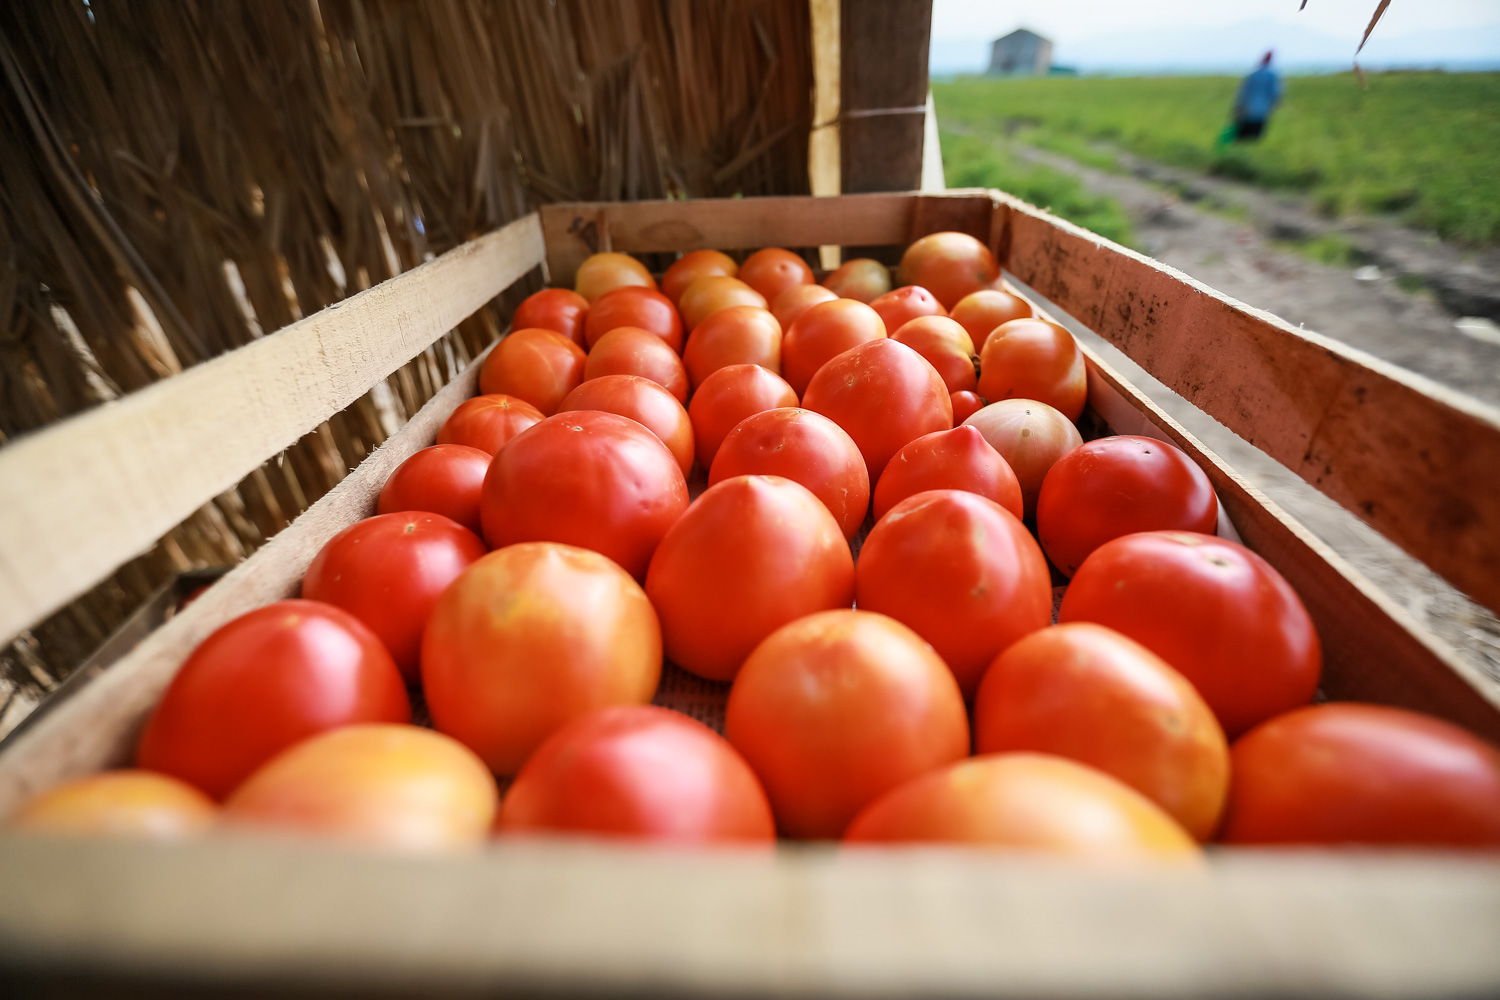 Hər qutuda 20-25 kq pomidor var ki, həmin bu pomidorlar bazarlara satışa çıxarılacaq